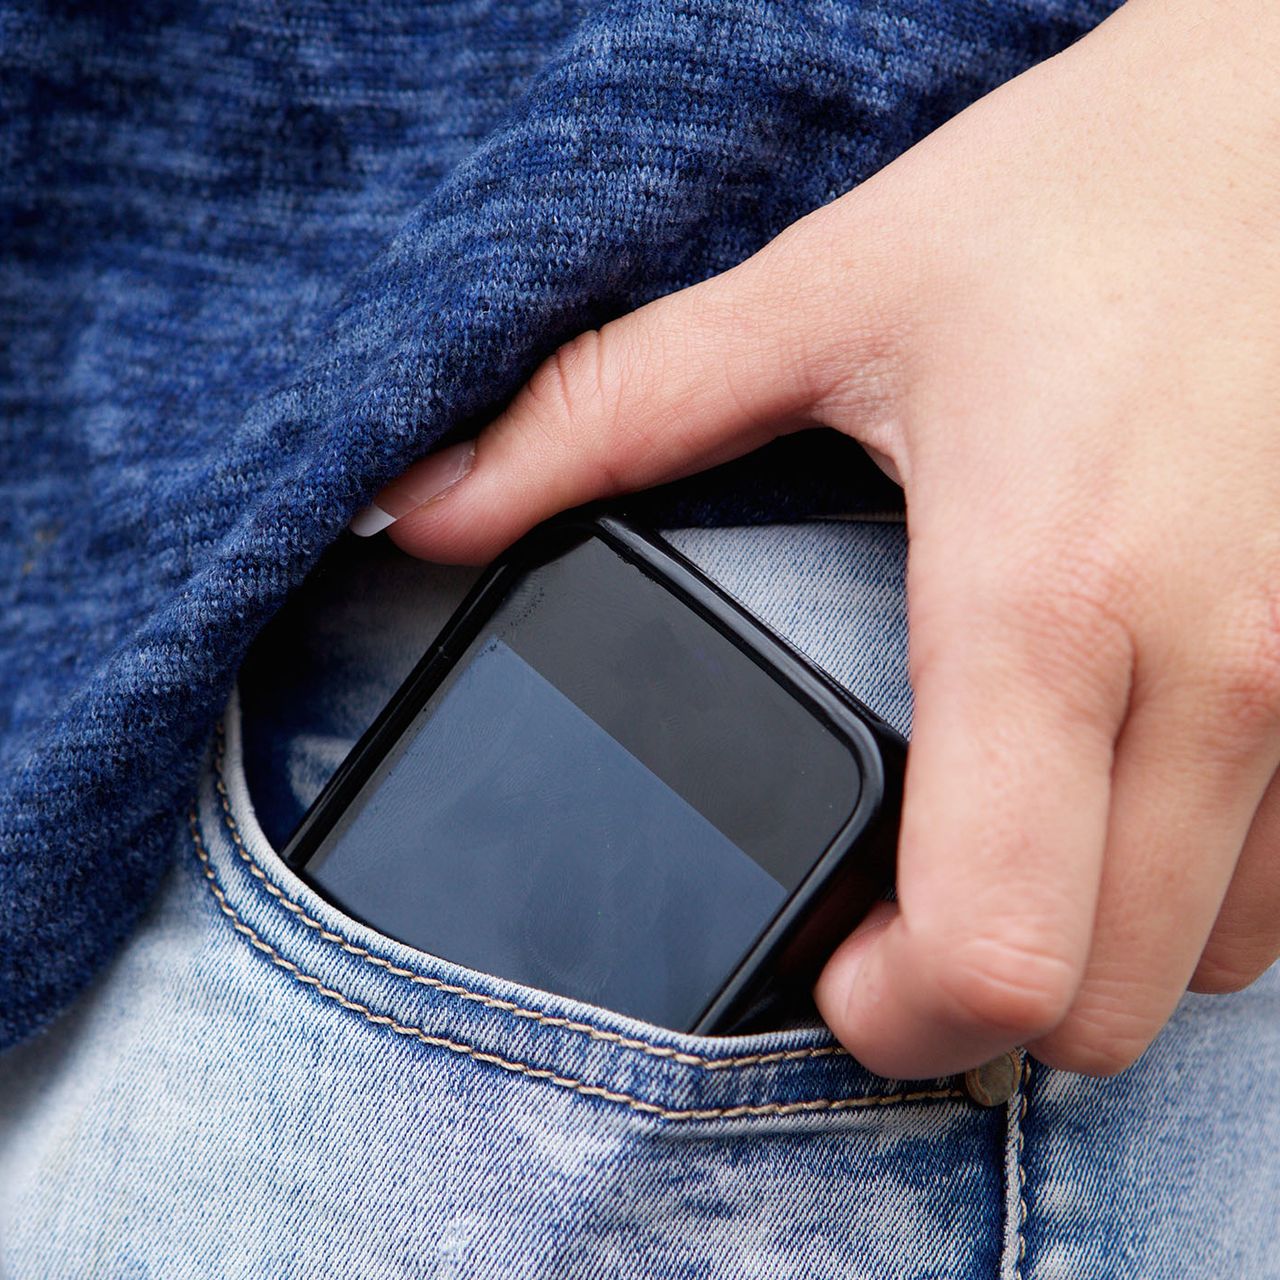 Sind Smartphones gefährlich für die Gesundheit? 7 Thesen im Check